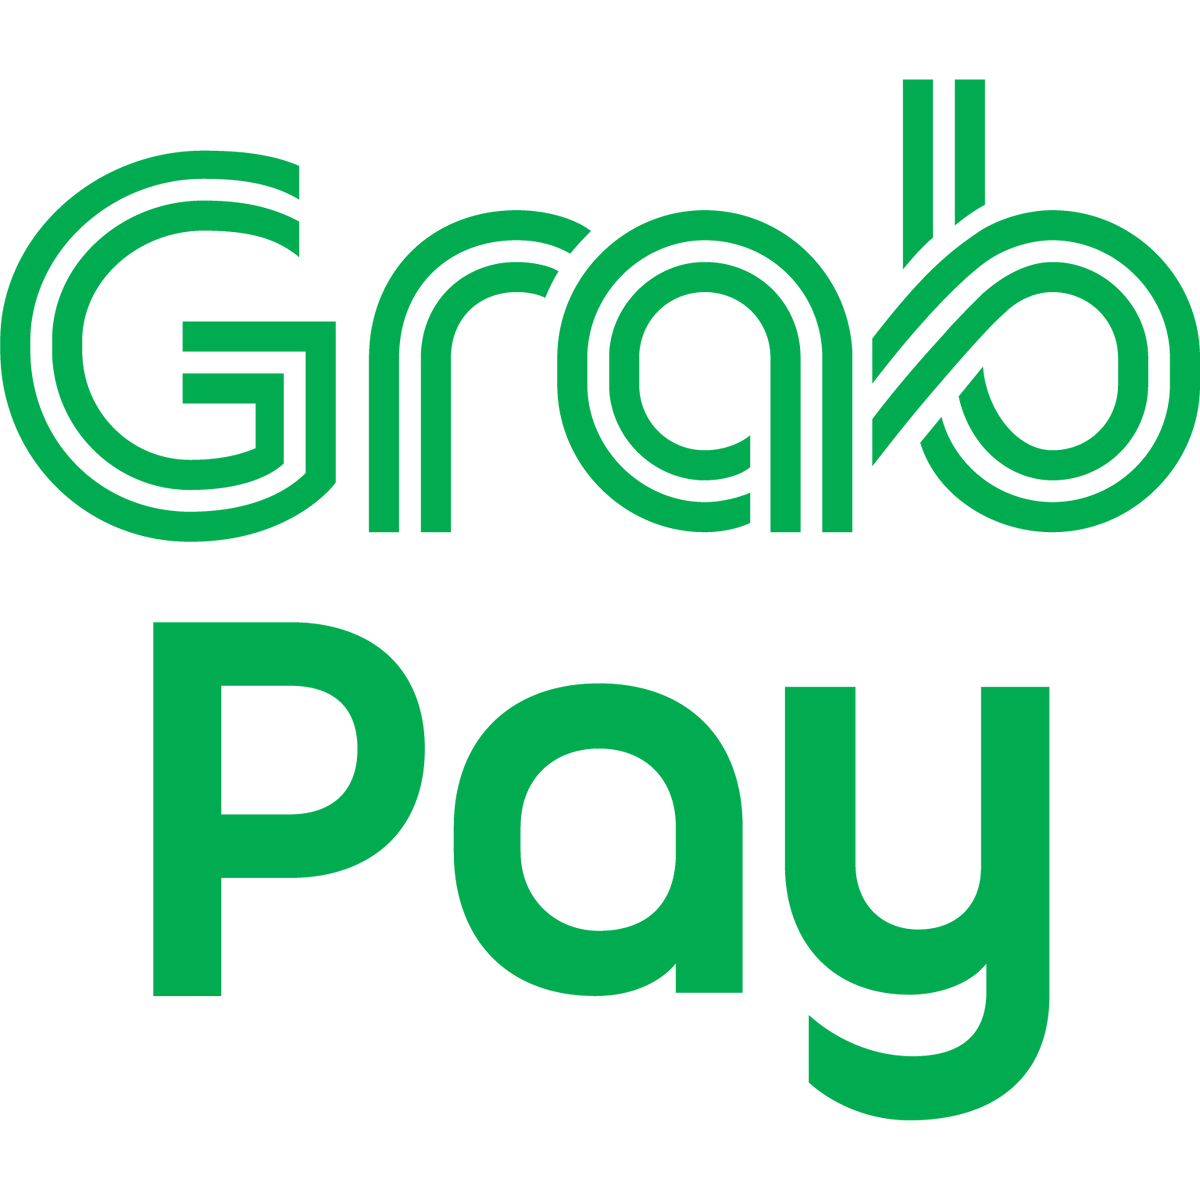 Grabpay-Zahlung